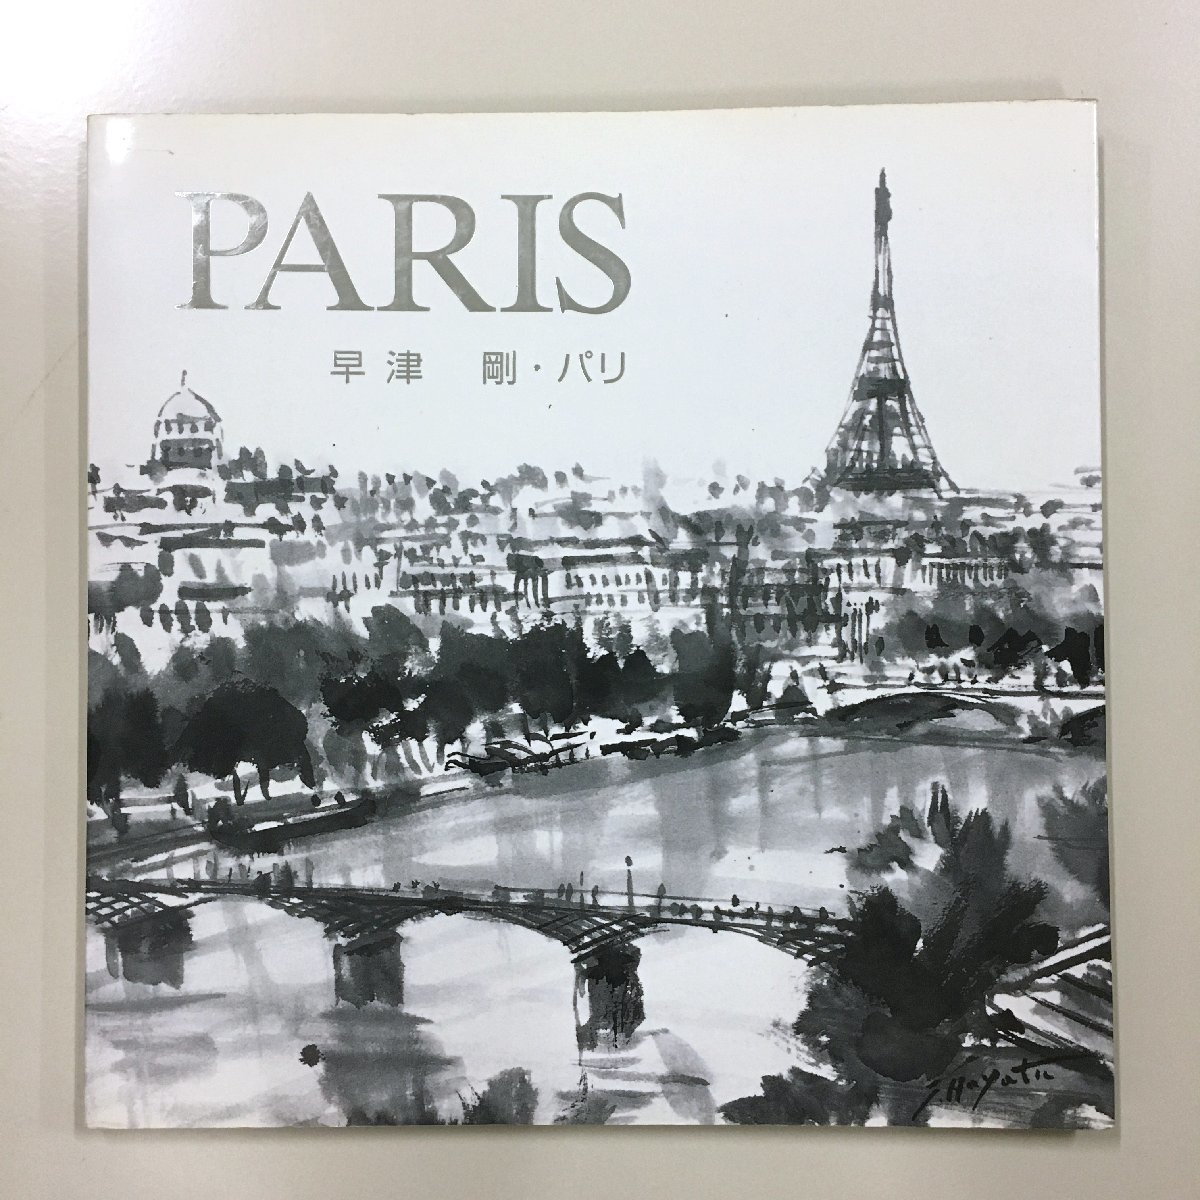 पेरिस त्सुयोशी हयात्सु पेरिस इंक पेंटिंग संग्रह हस्ताक्षरित, 1000 प्रतियों तक सीमित, हस्तलिखित हस्ताक्षर, हयात्सू गैलरी, कला पुस्तक, कार्यों का संग्रह, चित्रकारी, कला पुस्तक, संग्रह, कला पुस्तक